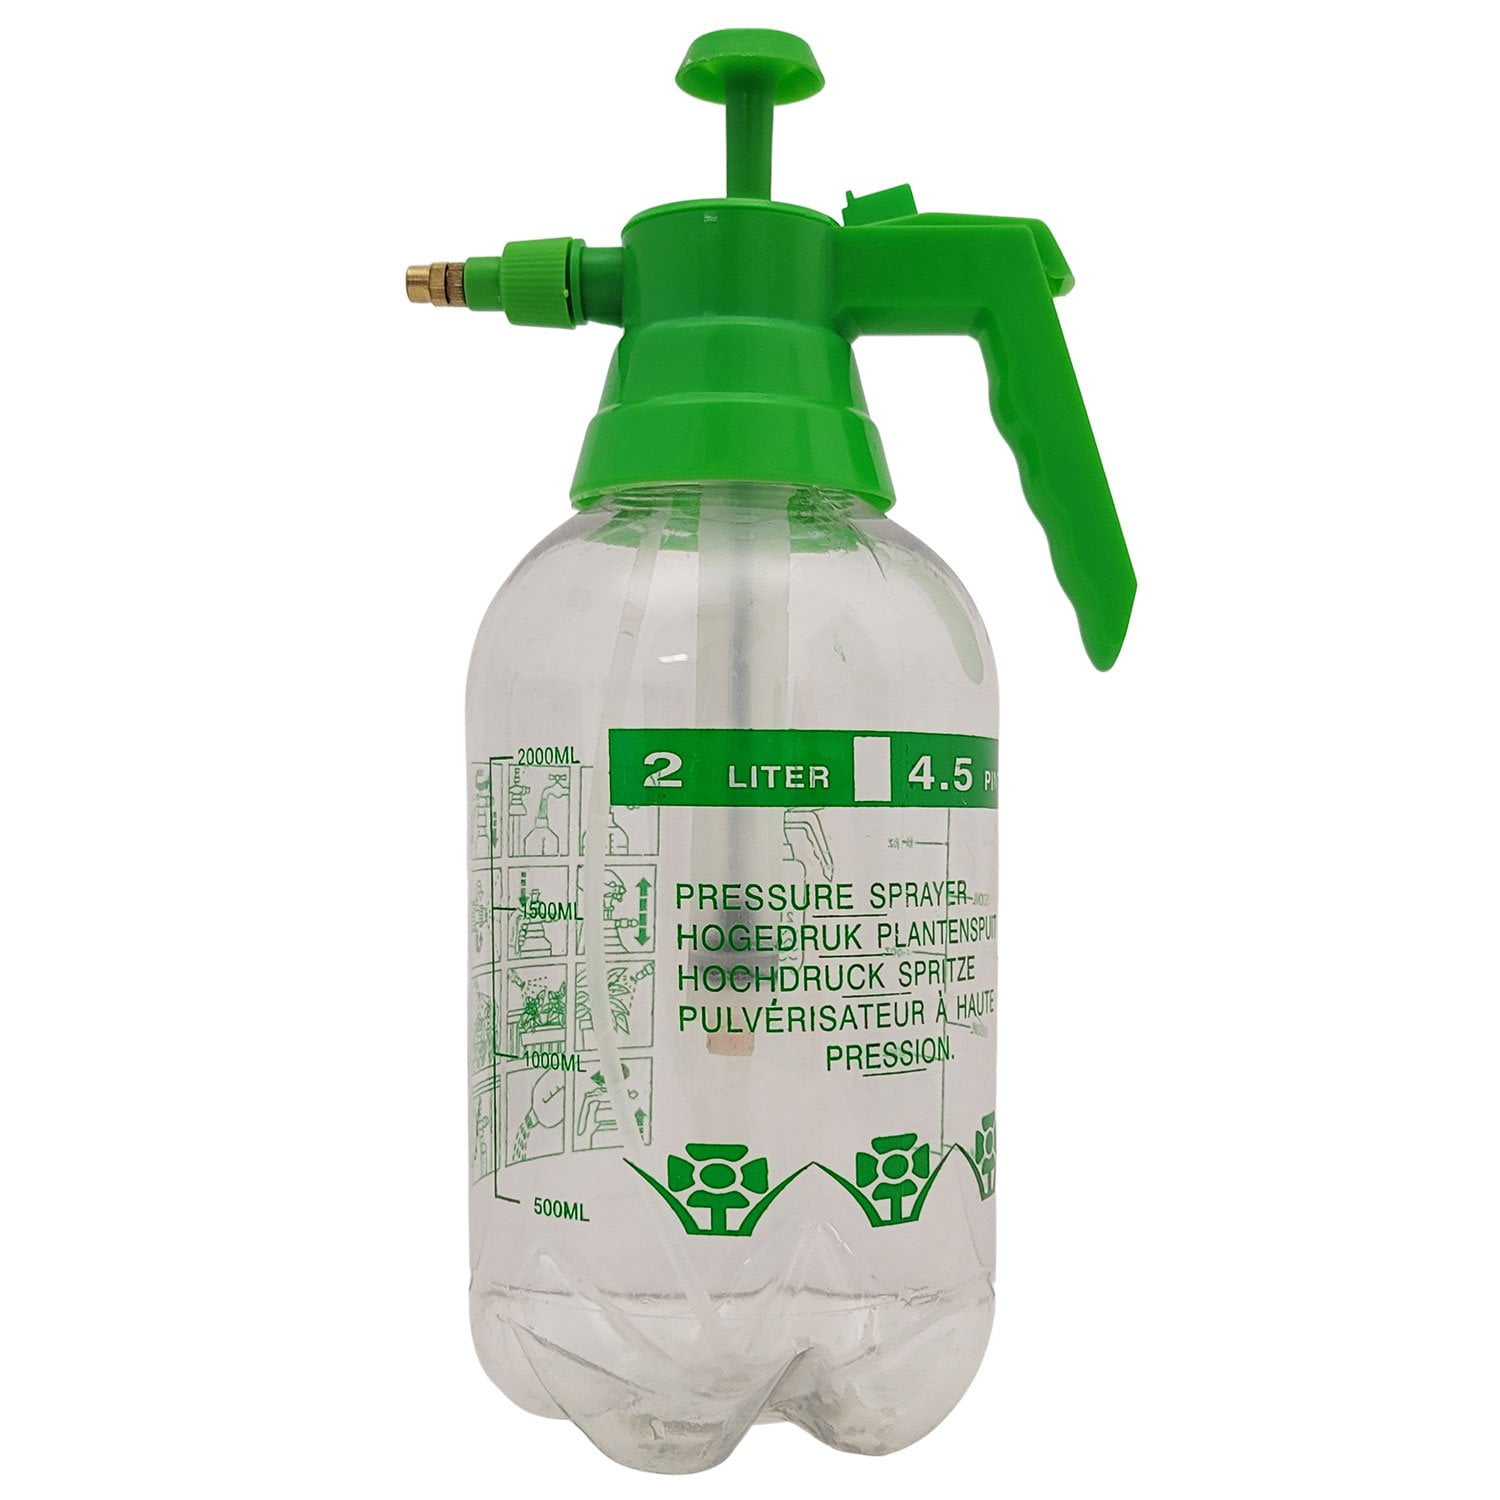 Hand Held Garden Sprayer Pump Pressure Water Sprayer 2 Liter Half